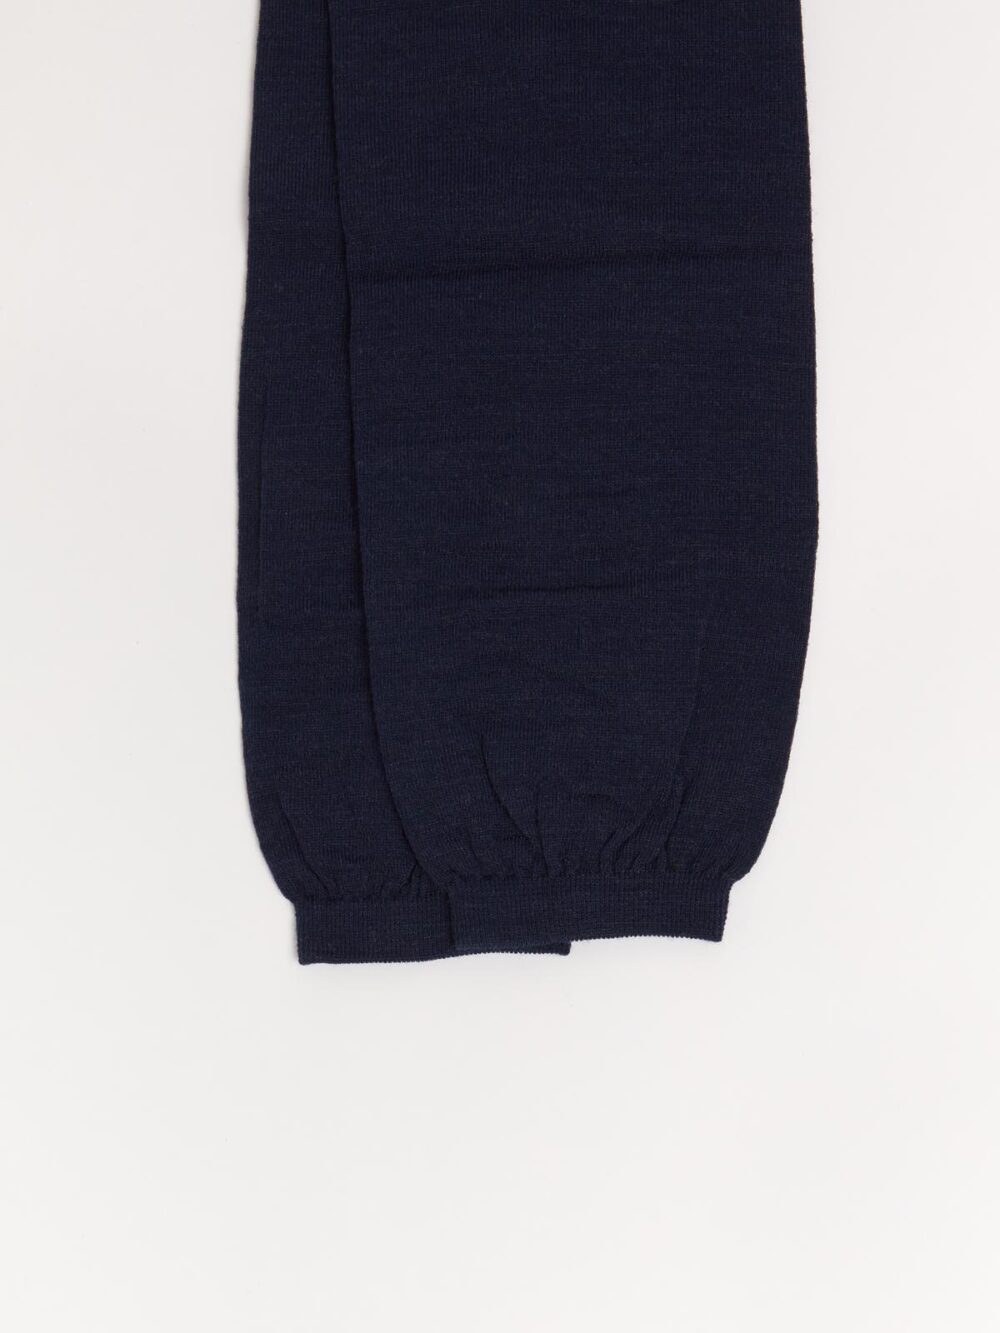 Wool Leggings in Navy Blue by Fog Linen